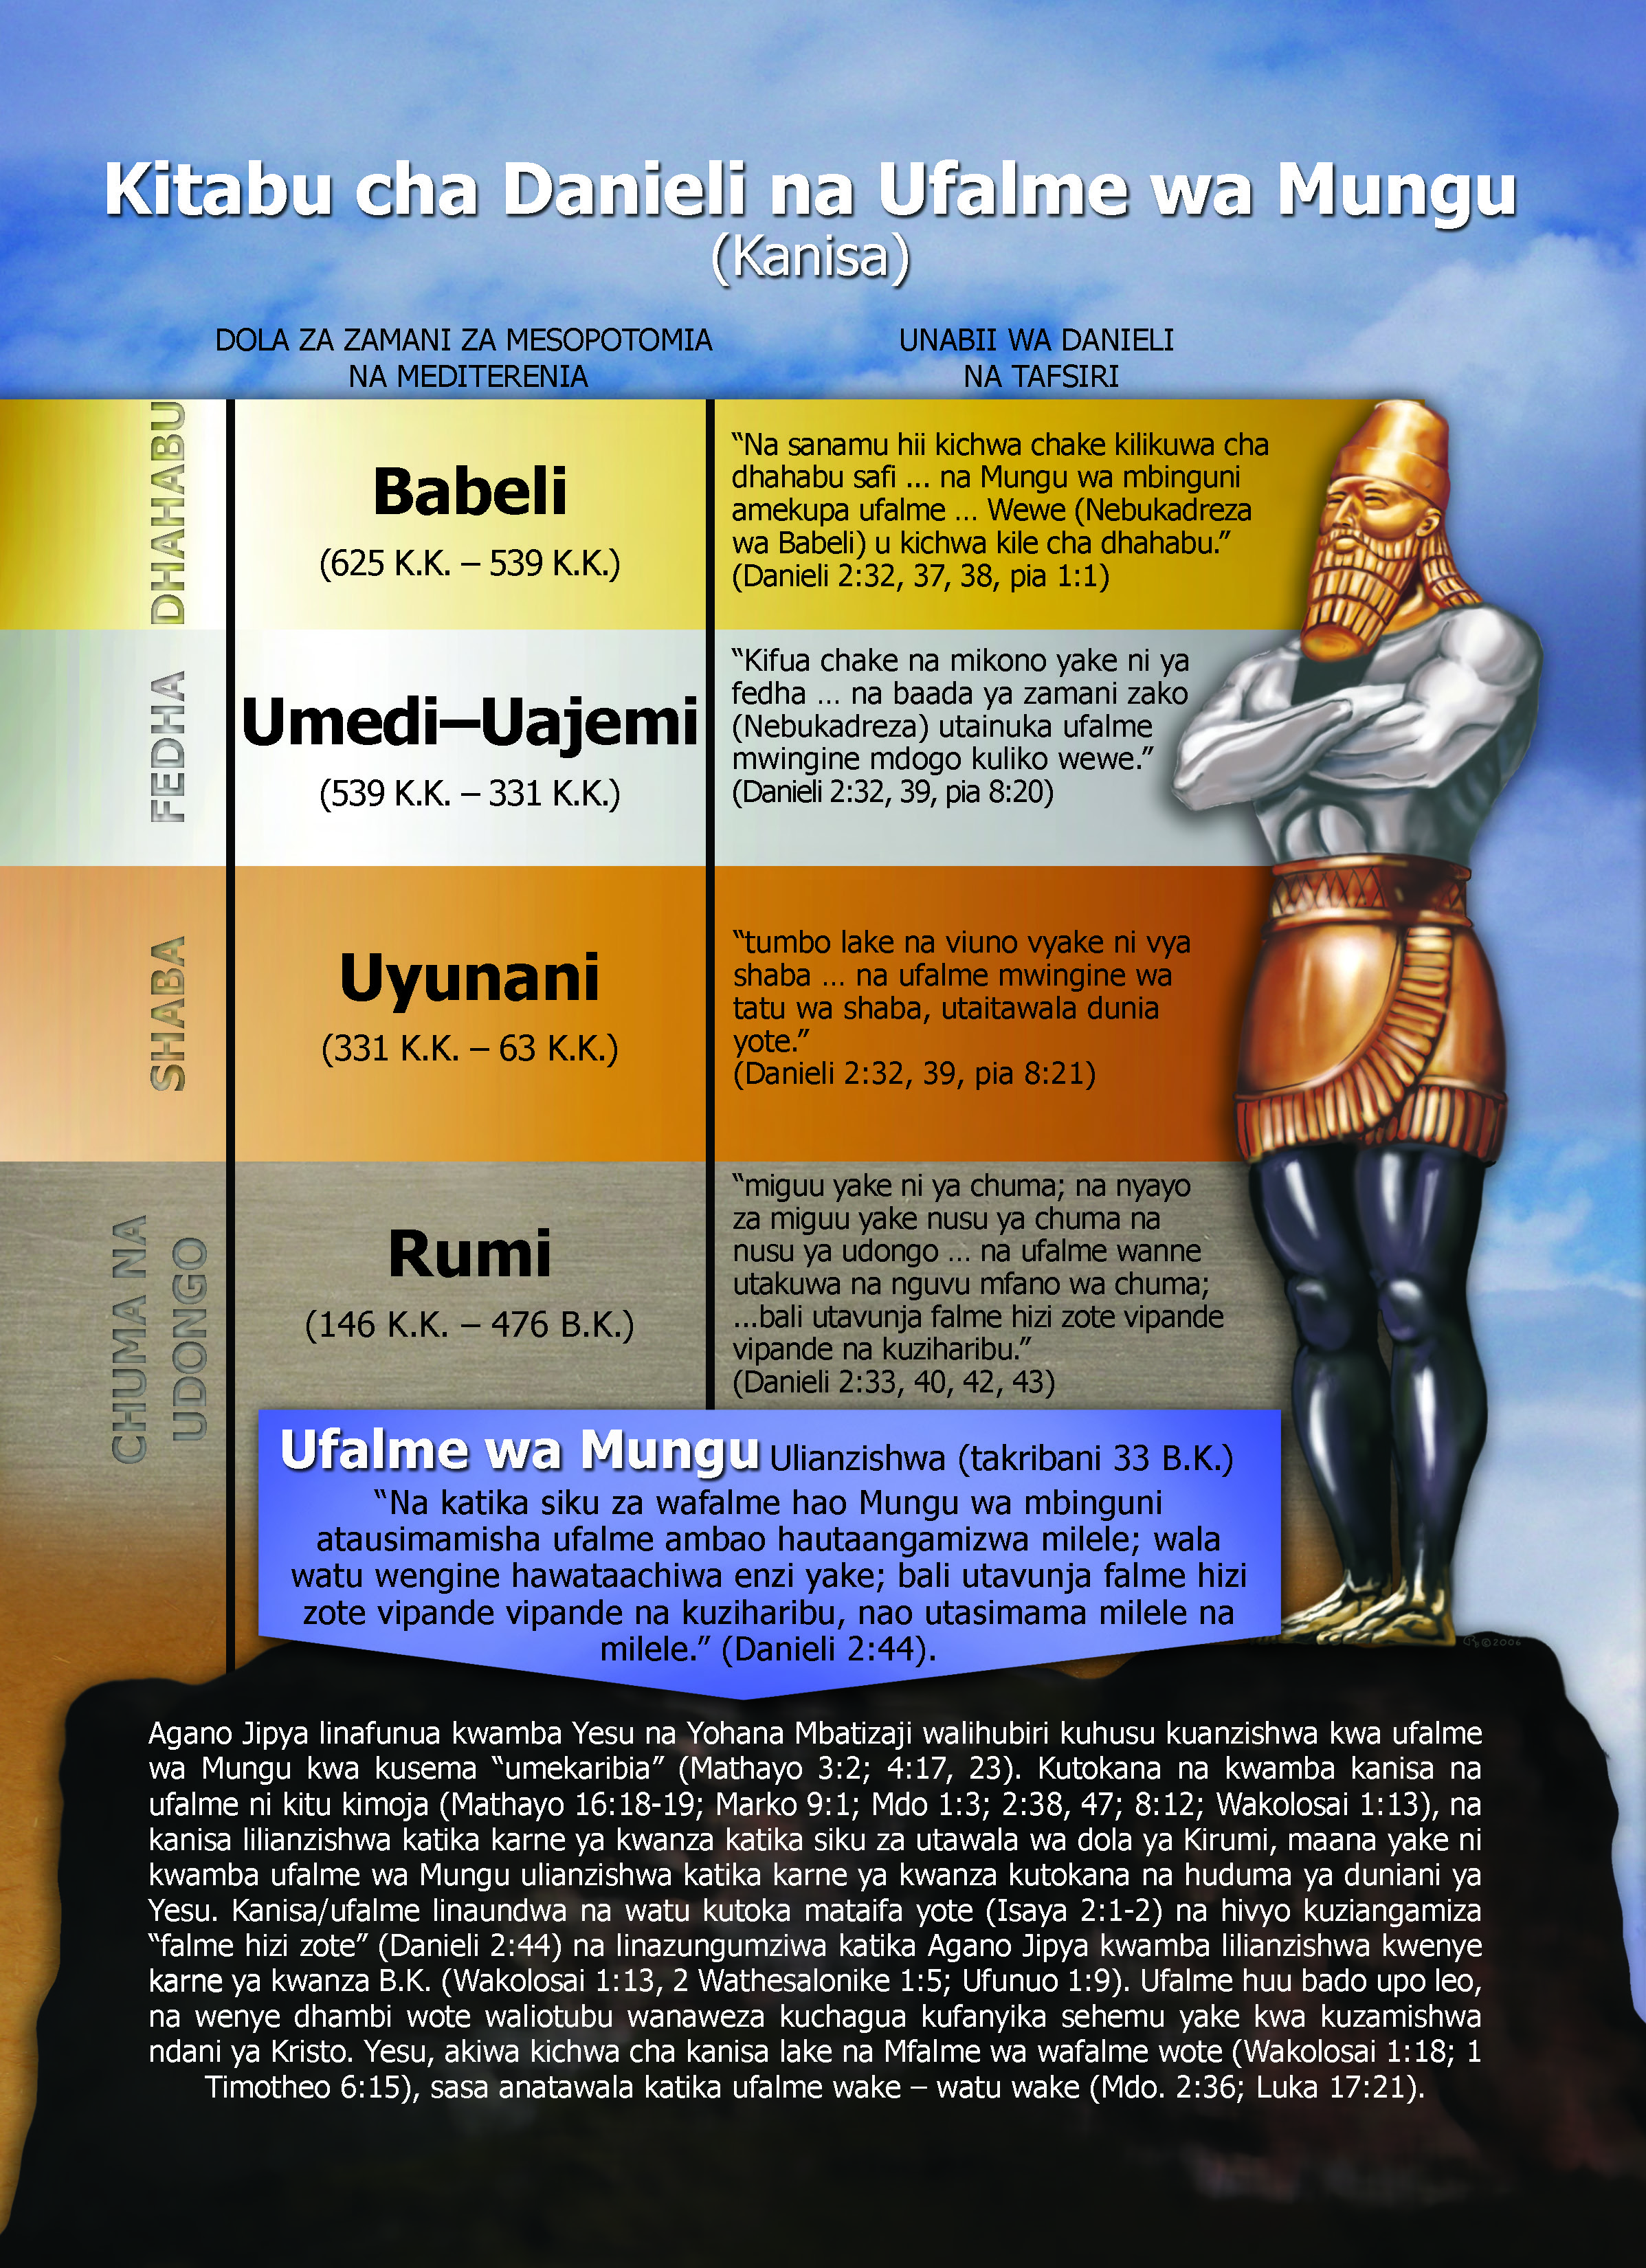 Kitabu cha Danieli na Ufalme wa Mungu